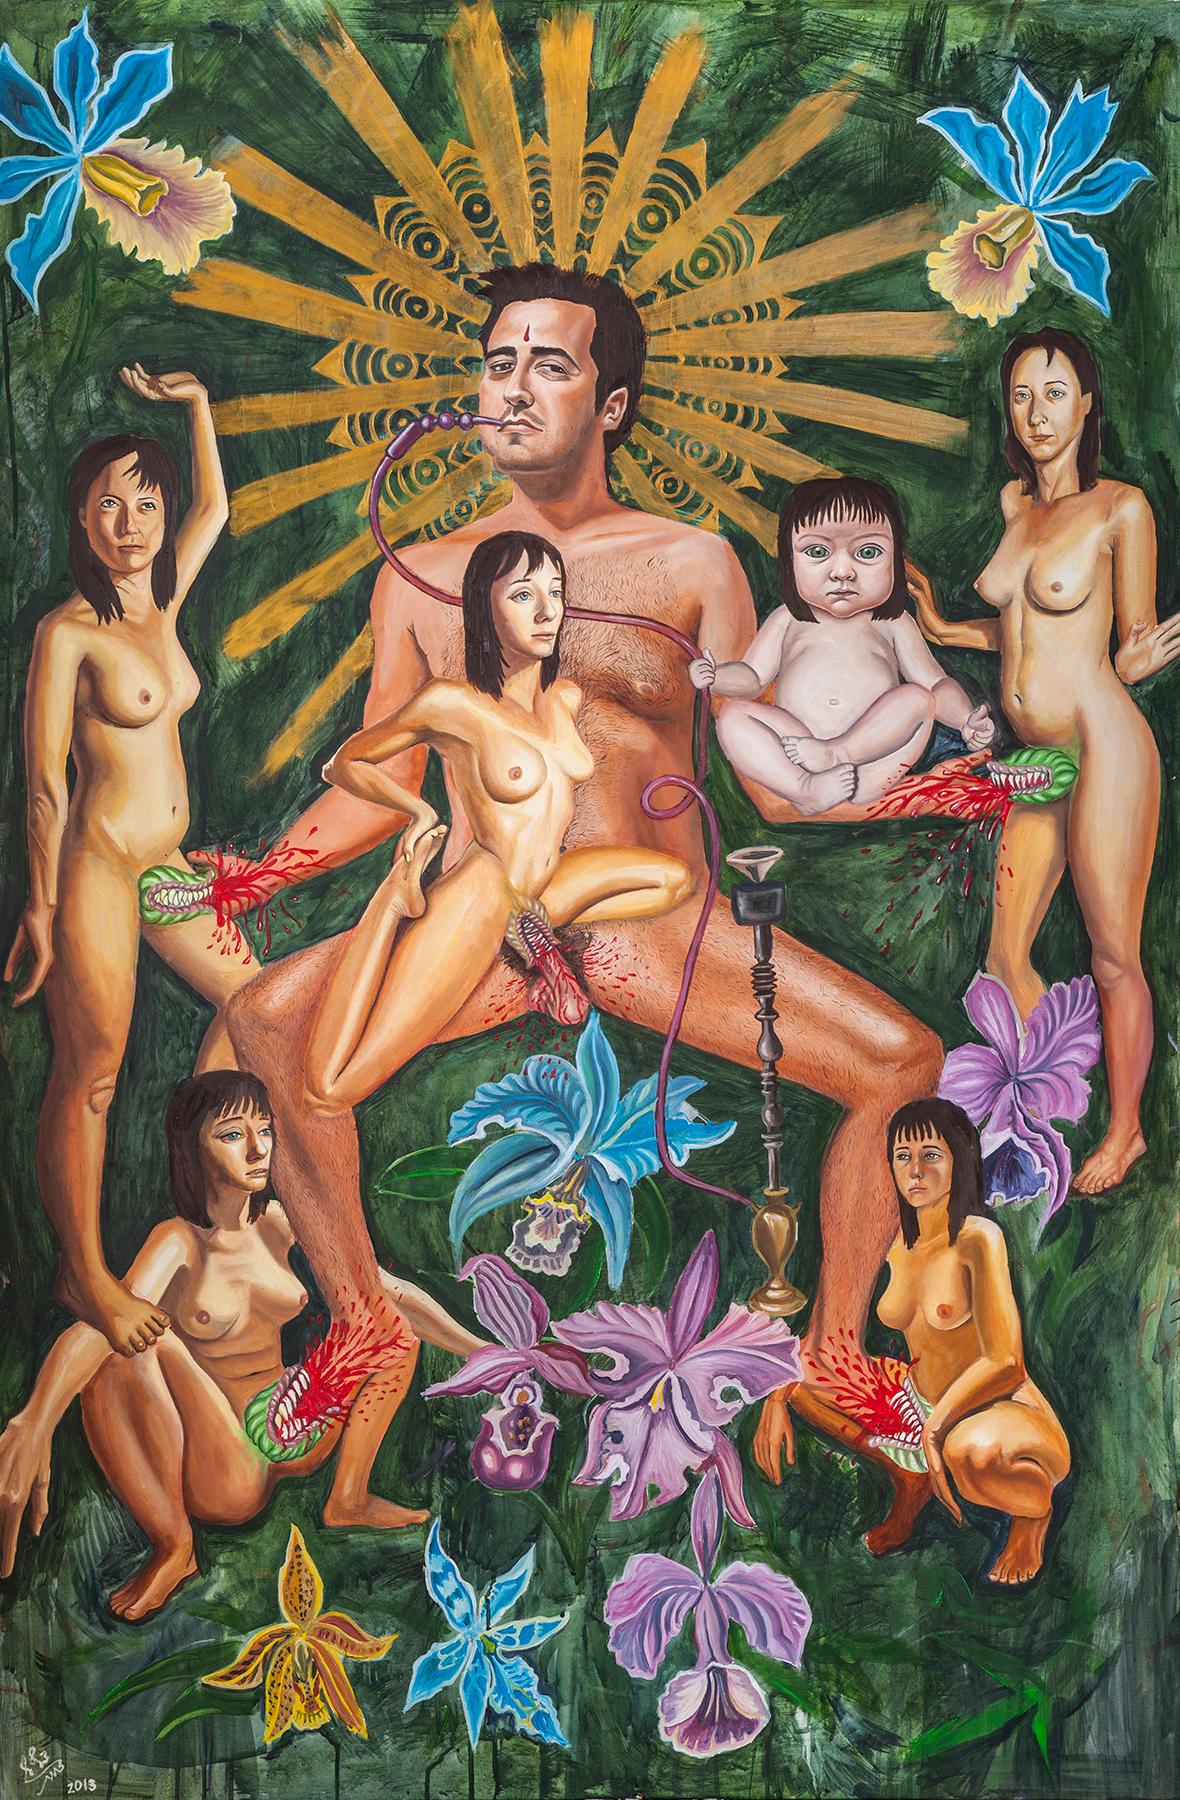 « KAMA SUTRA », peinture à l'huile surréaliste, genre, sexualité, vagina dentata, mythe